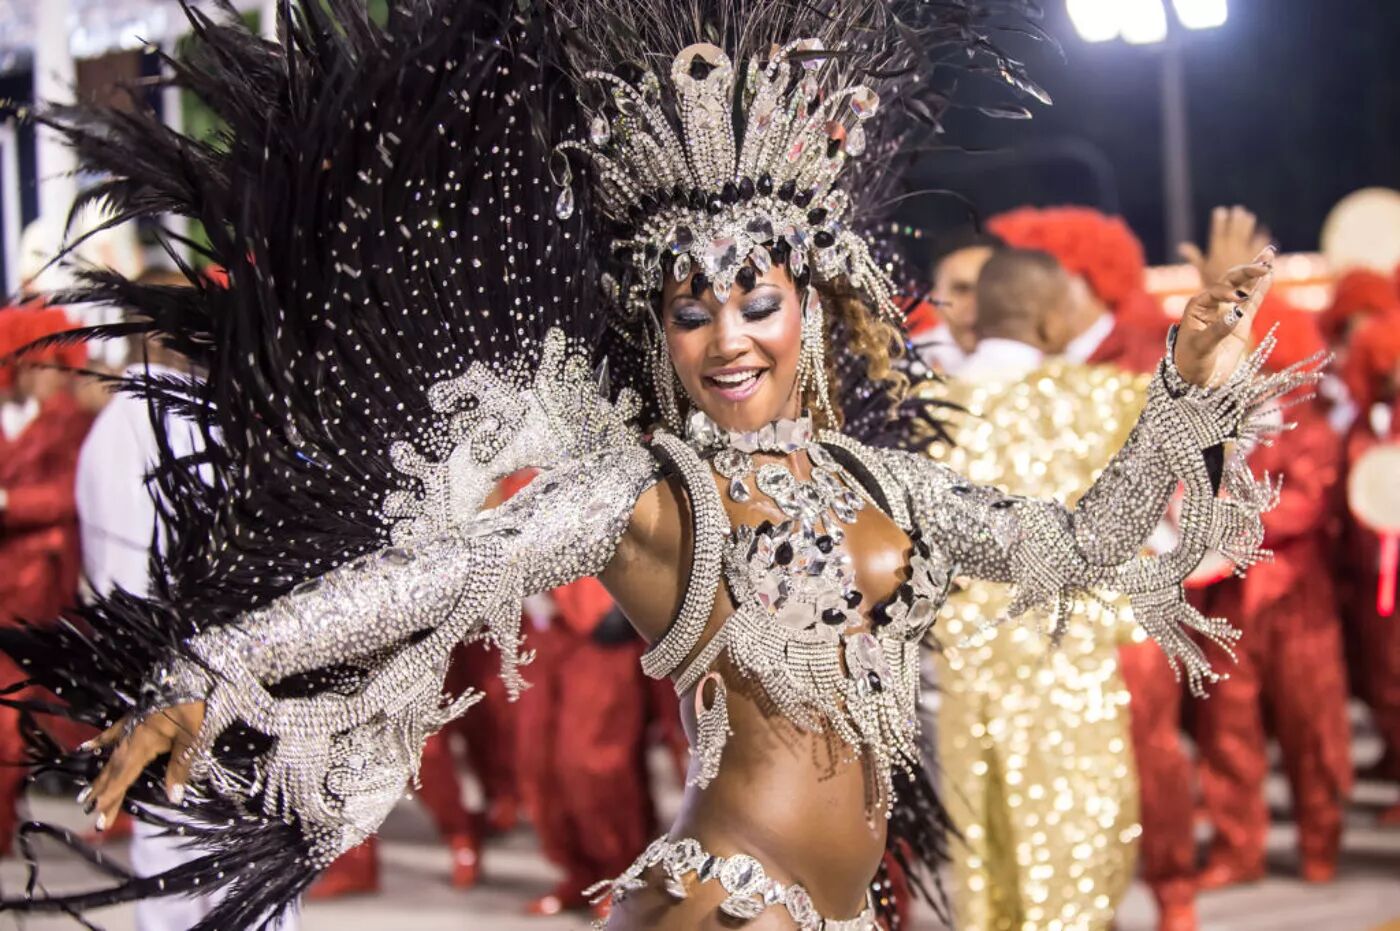 Samba Parade dancer at Rio de Janeiro Carnival.
